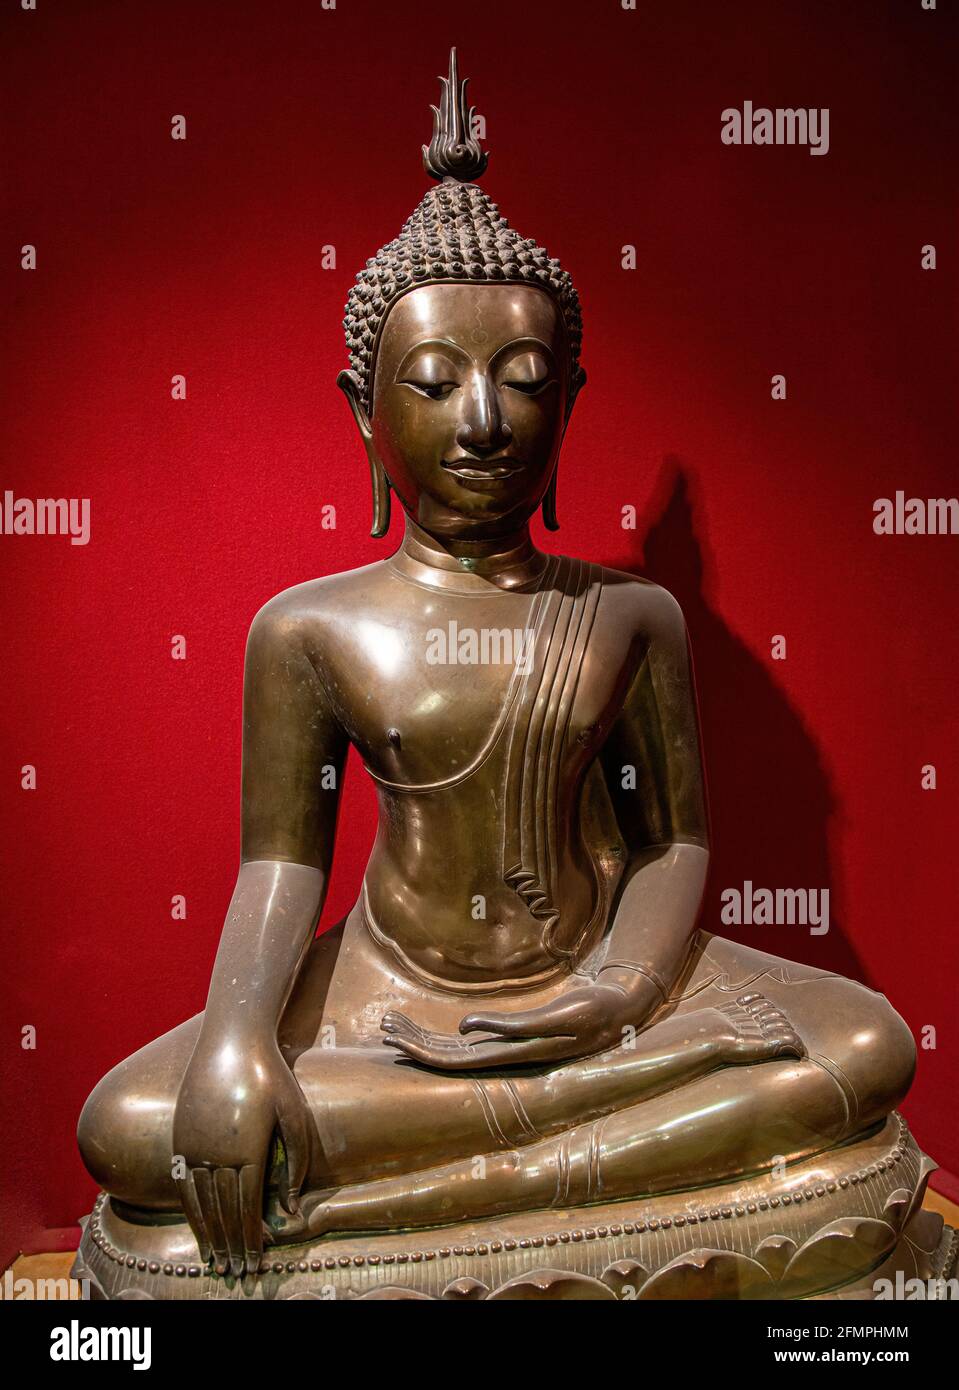 Statua di Buddha in posizione tranquilla di riposo. Shakyamuni Buddha è un insegnante spirituale, una delle tre religioni del mondo. Siddhartha Gautama Siddhattha Gotama Foto Stock